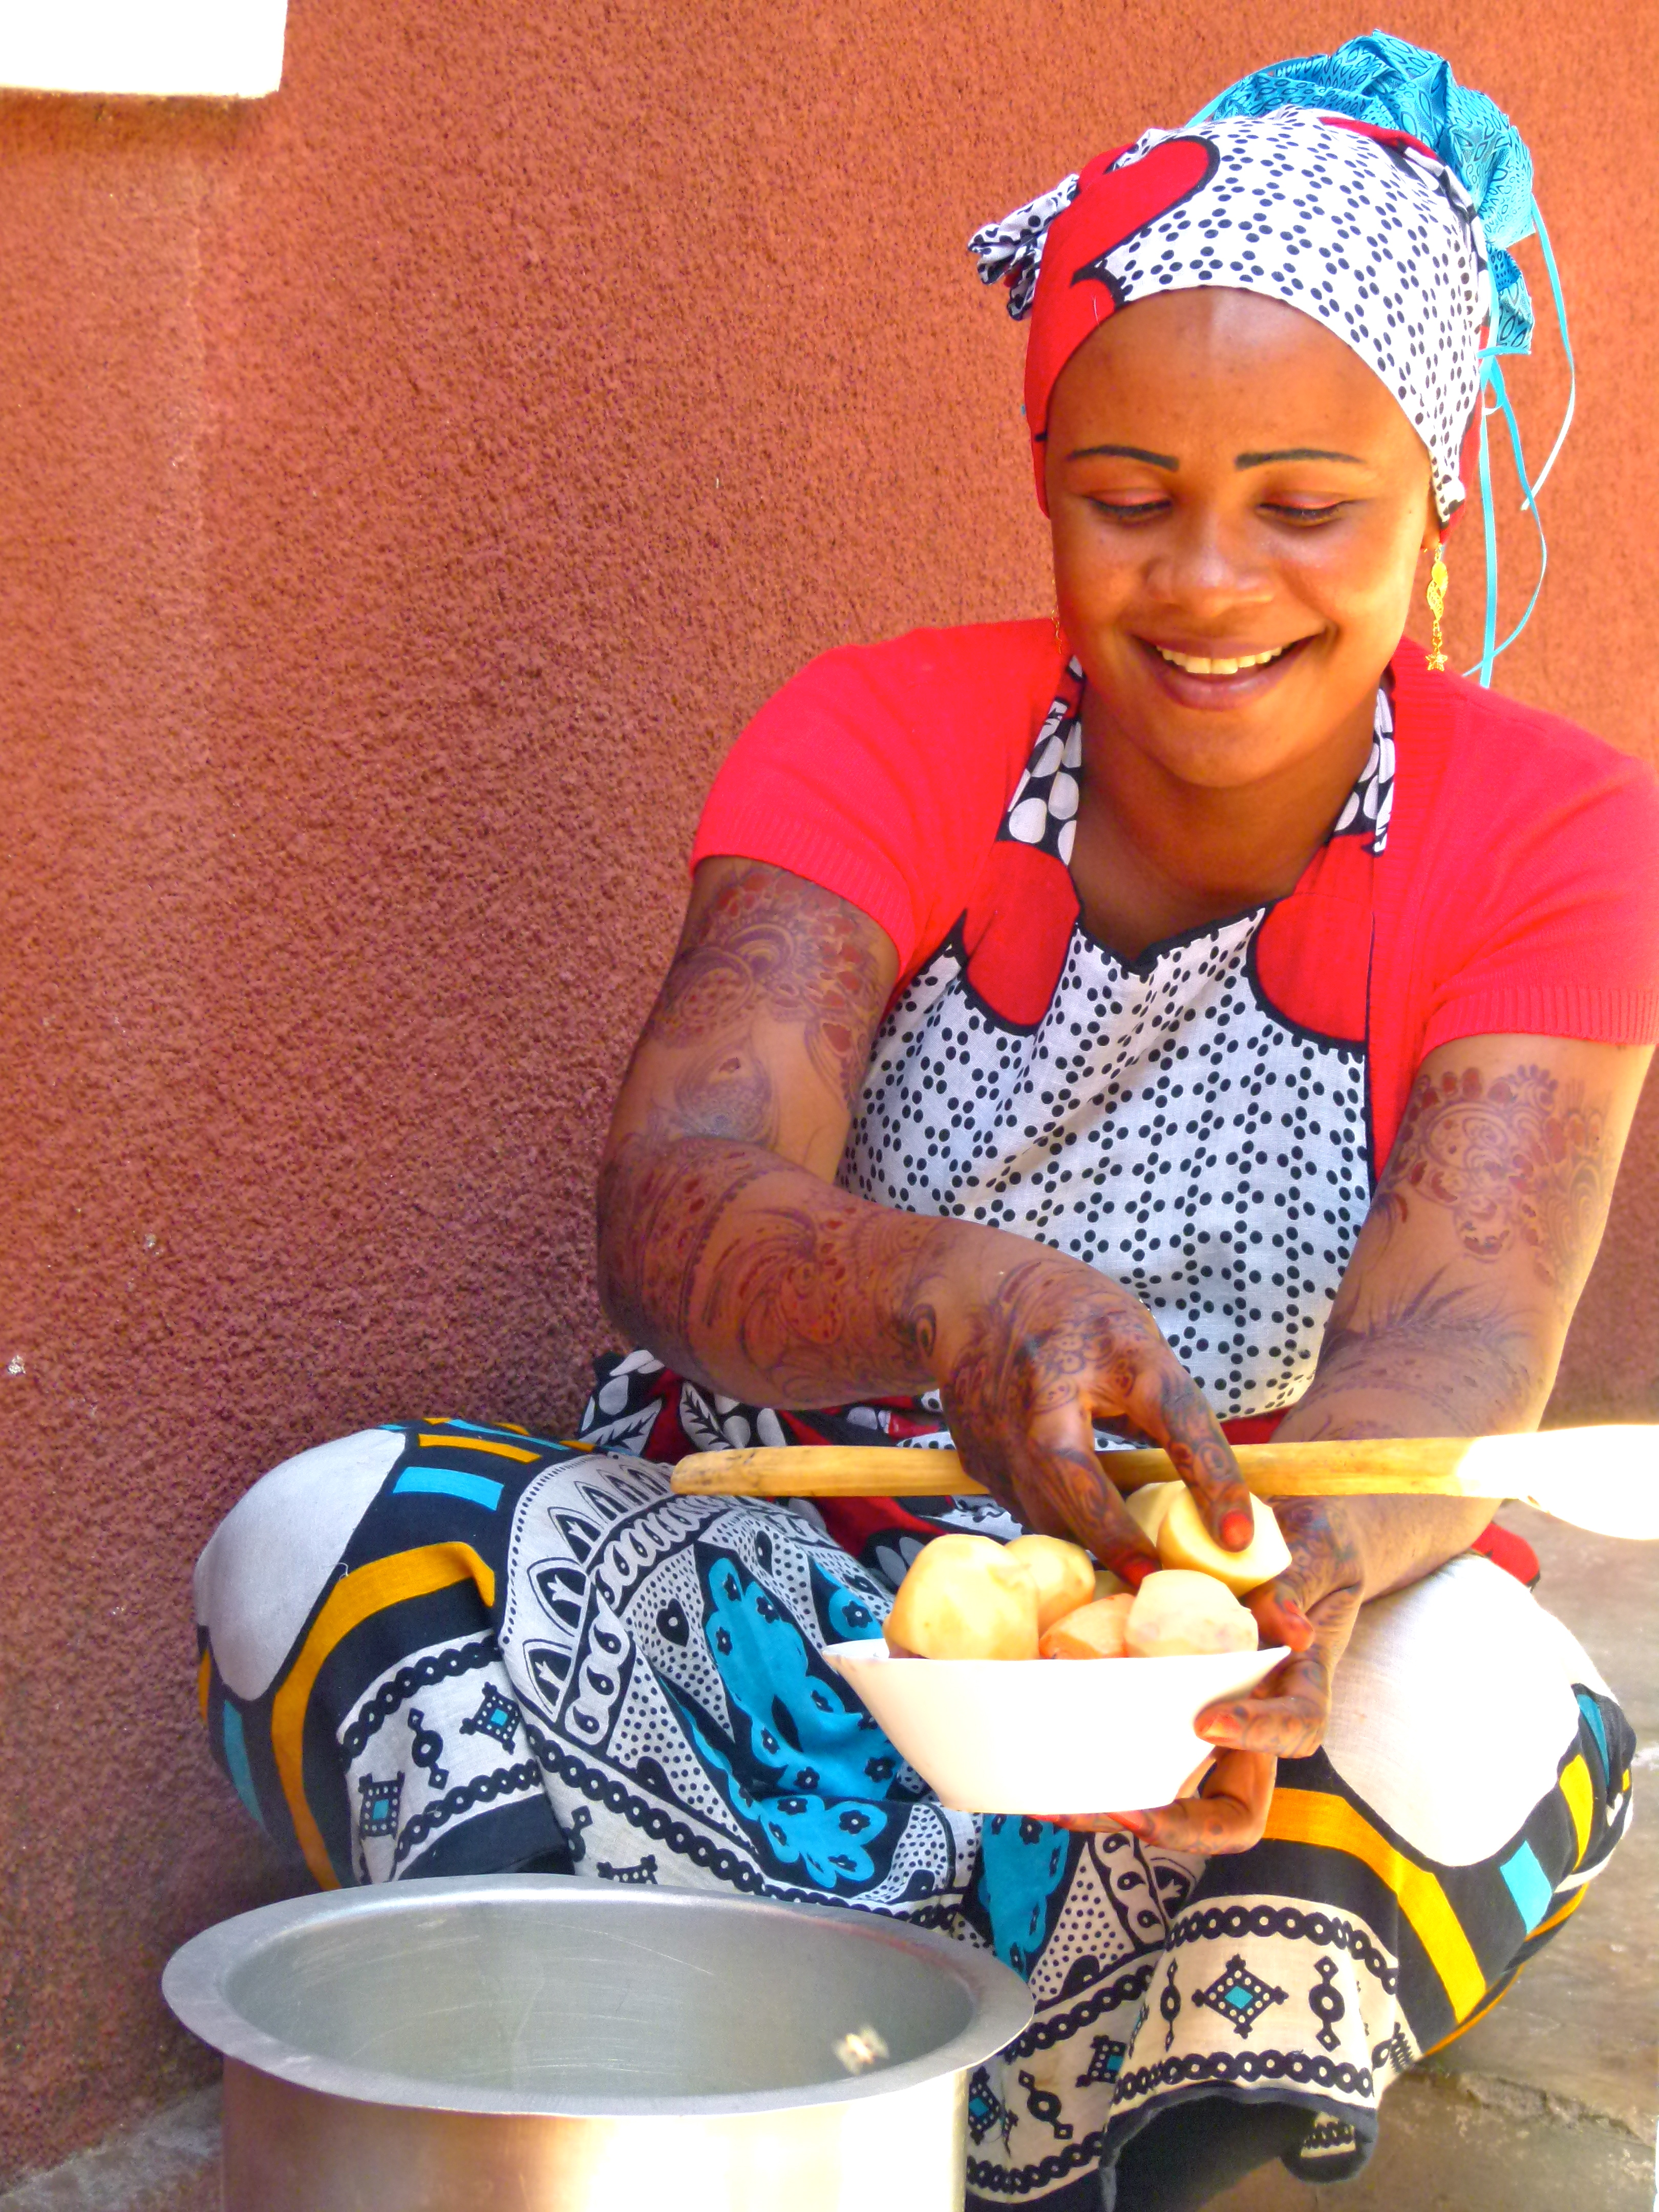 Eine junge Frau mit Henna bemalten Armen kocht in einem Hinterhof